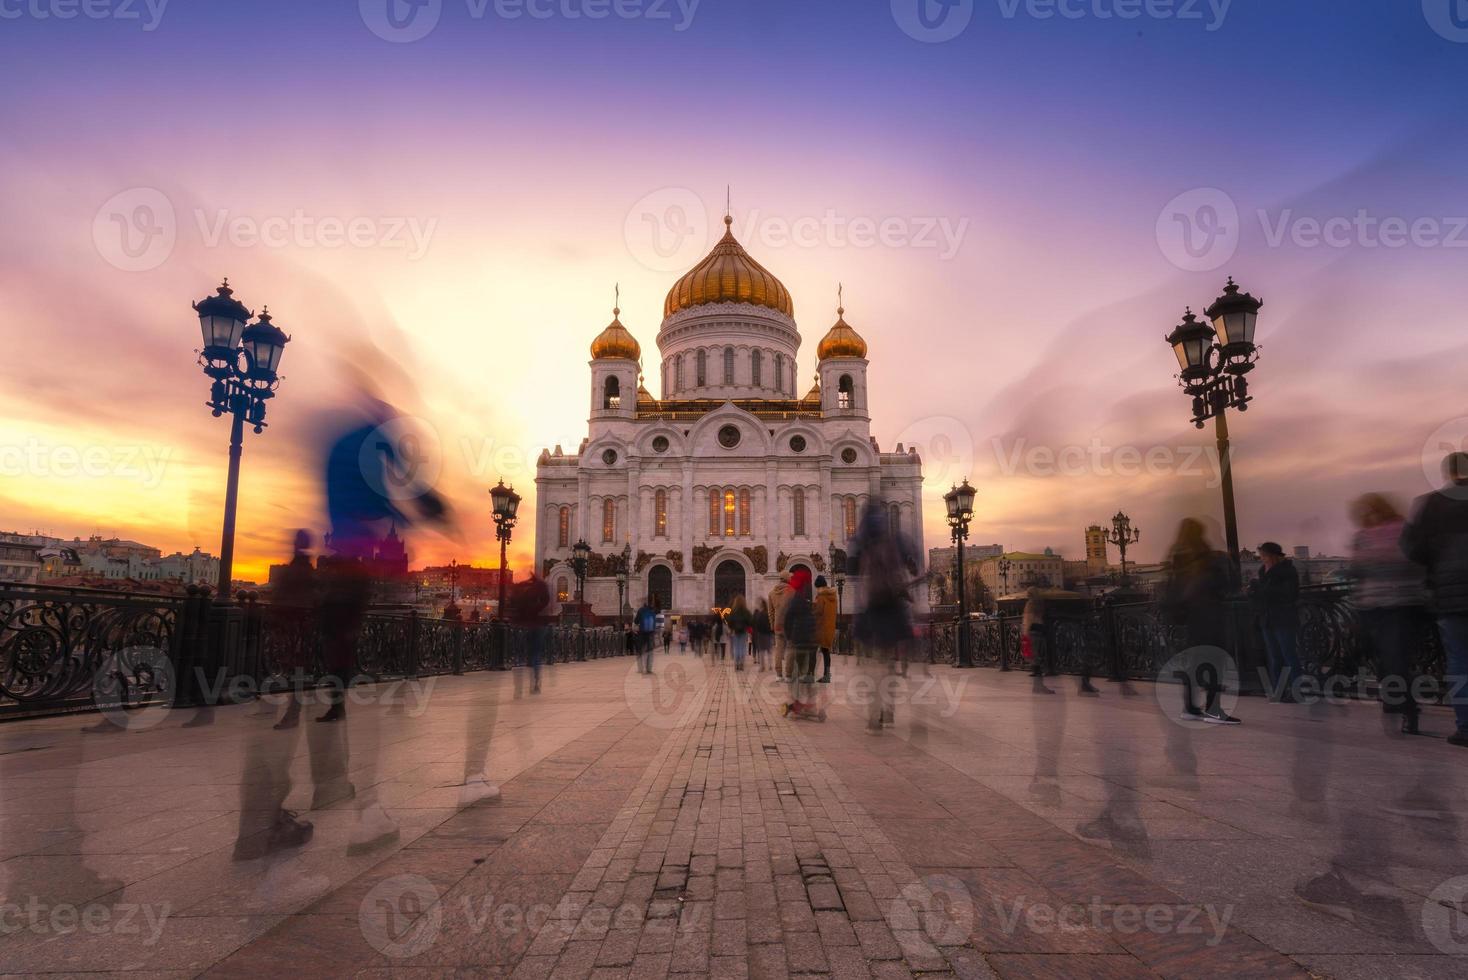 kathedraal van christus de verlosser in schemertijd in moskou, rusland. foto